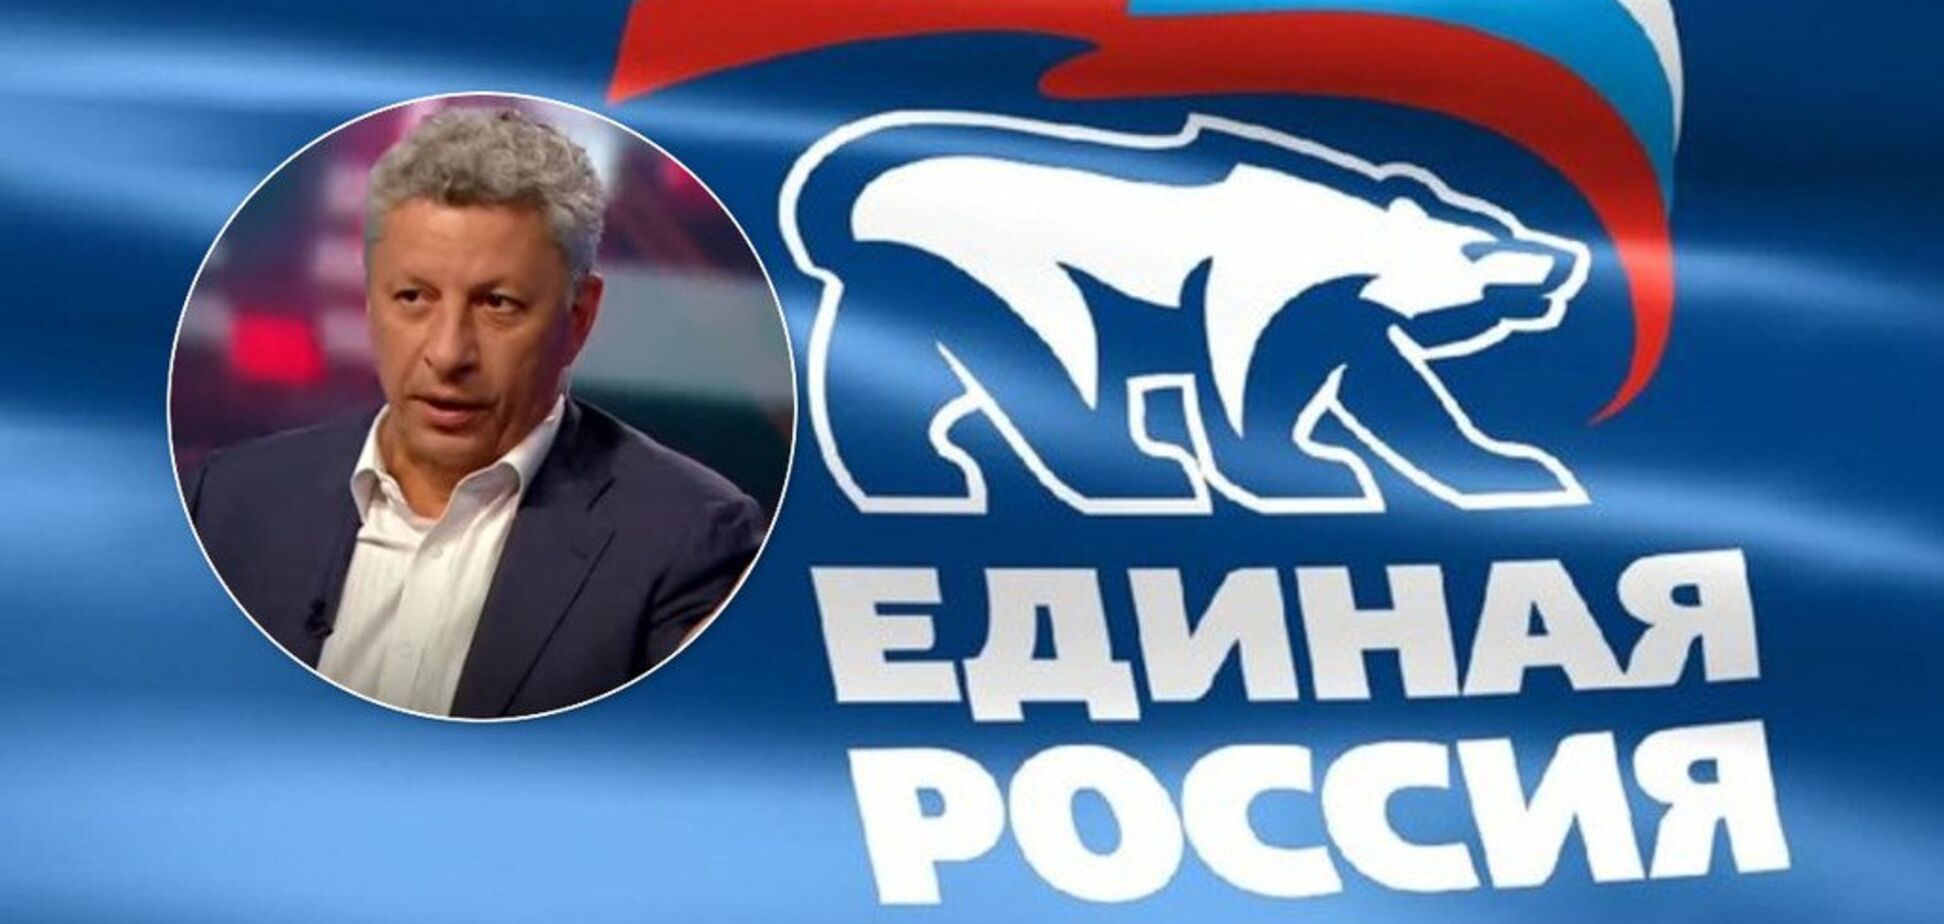 Съездил на поклон в Москву: Бойко признался, о чем договорился с партией Путина